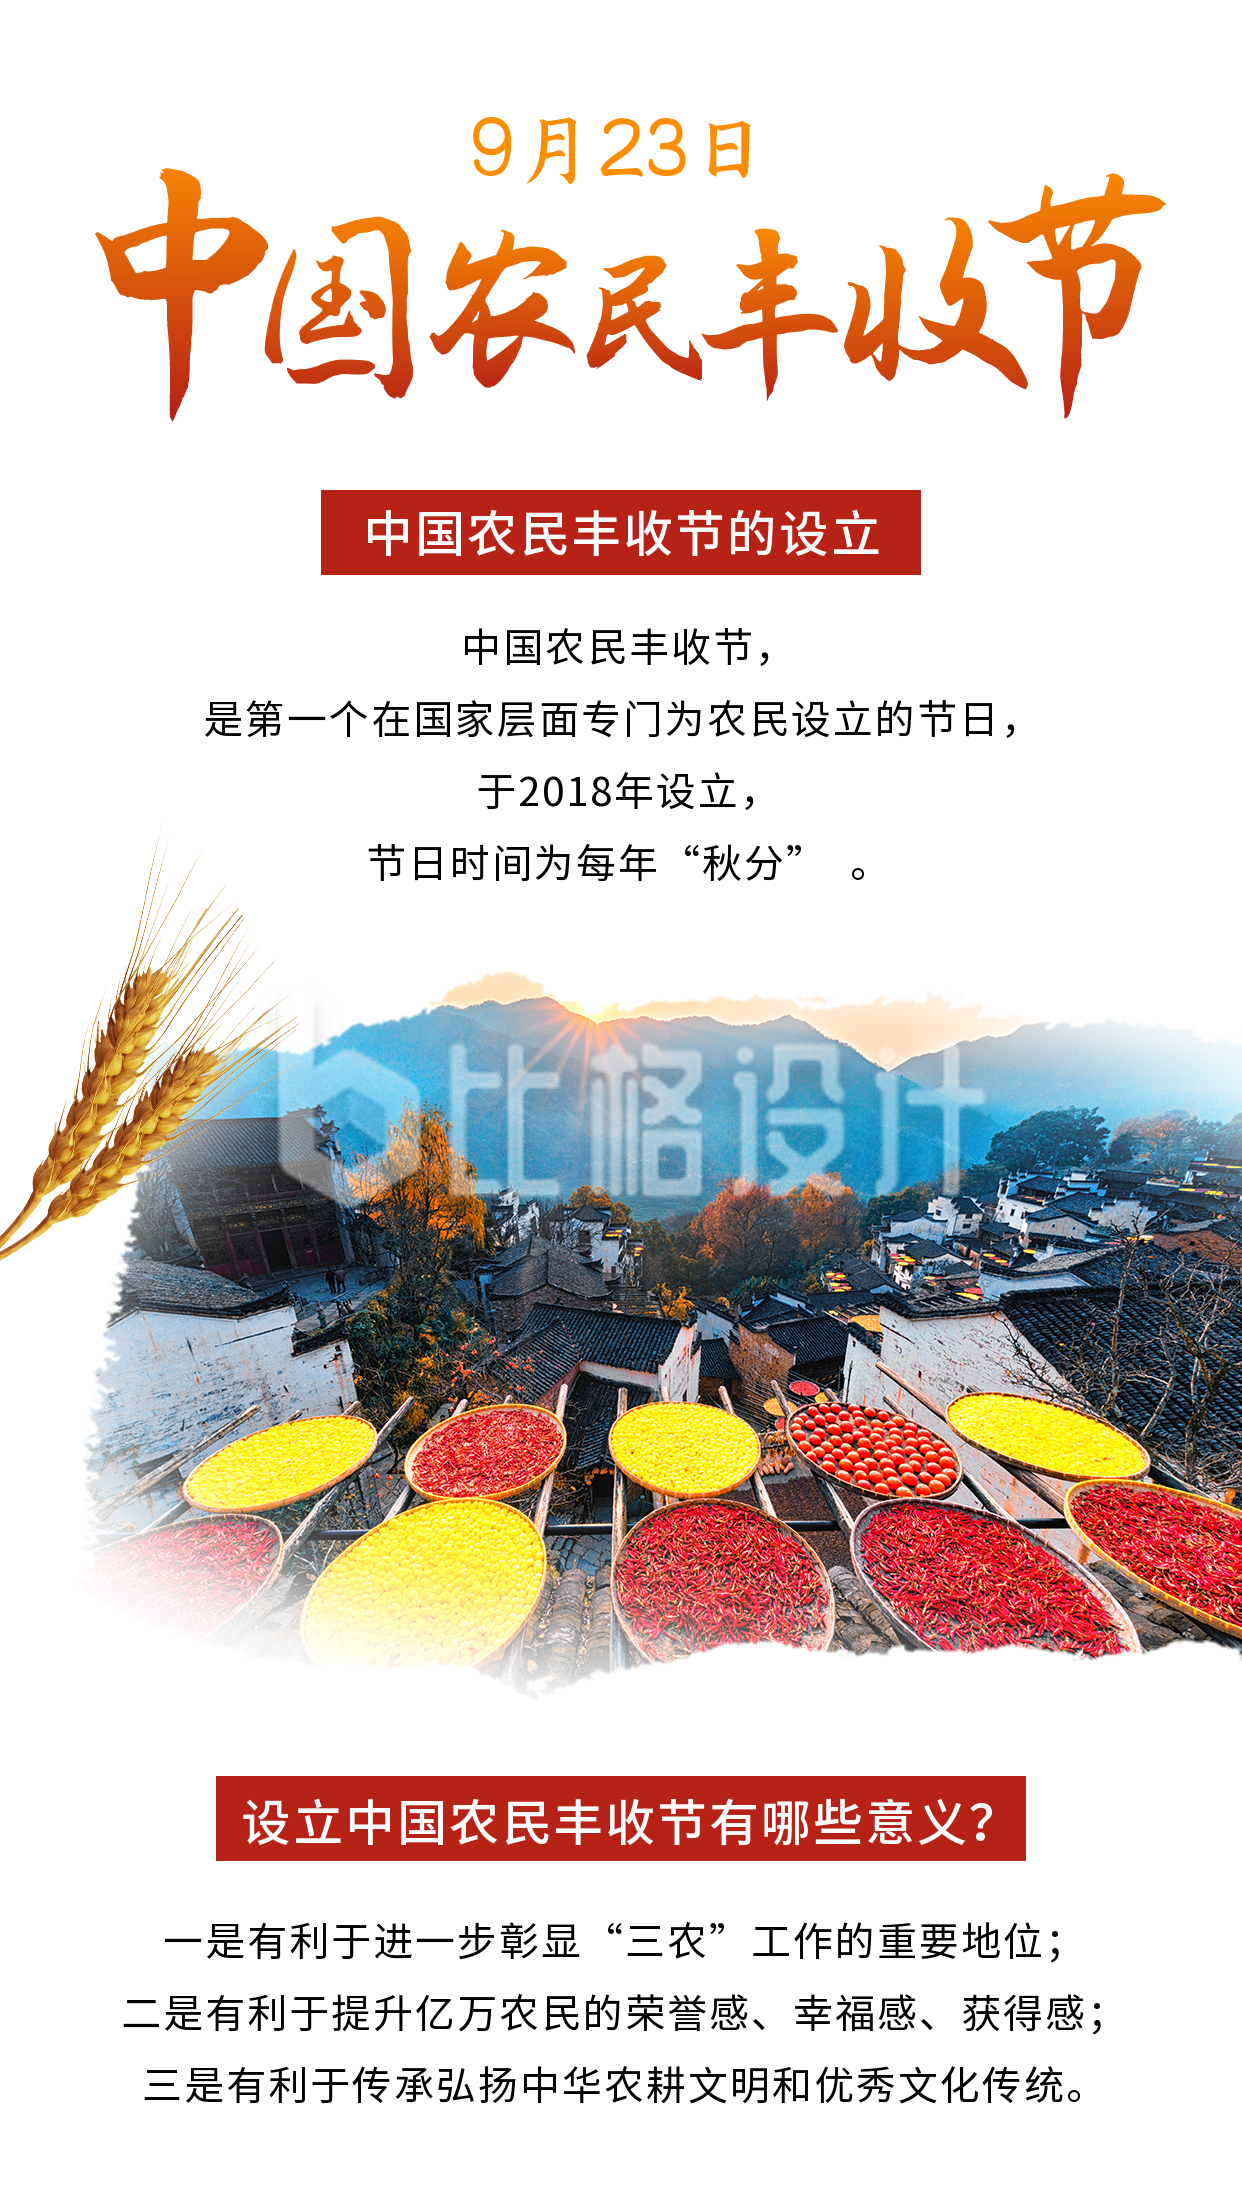 中国农民丰收节秋收农耕政务大气竖版配图